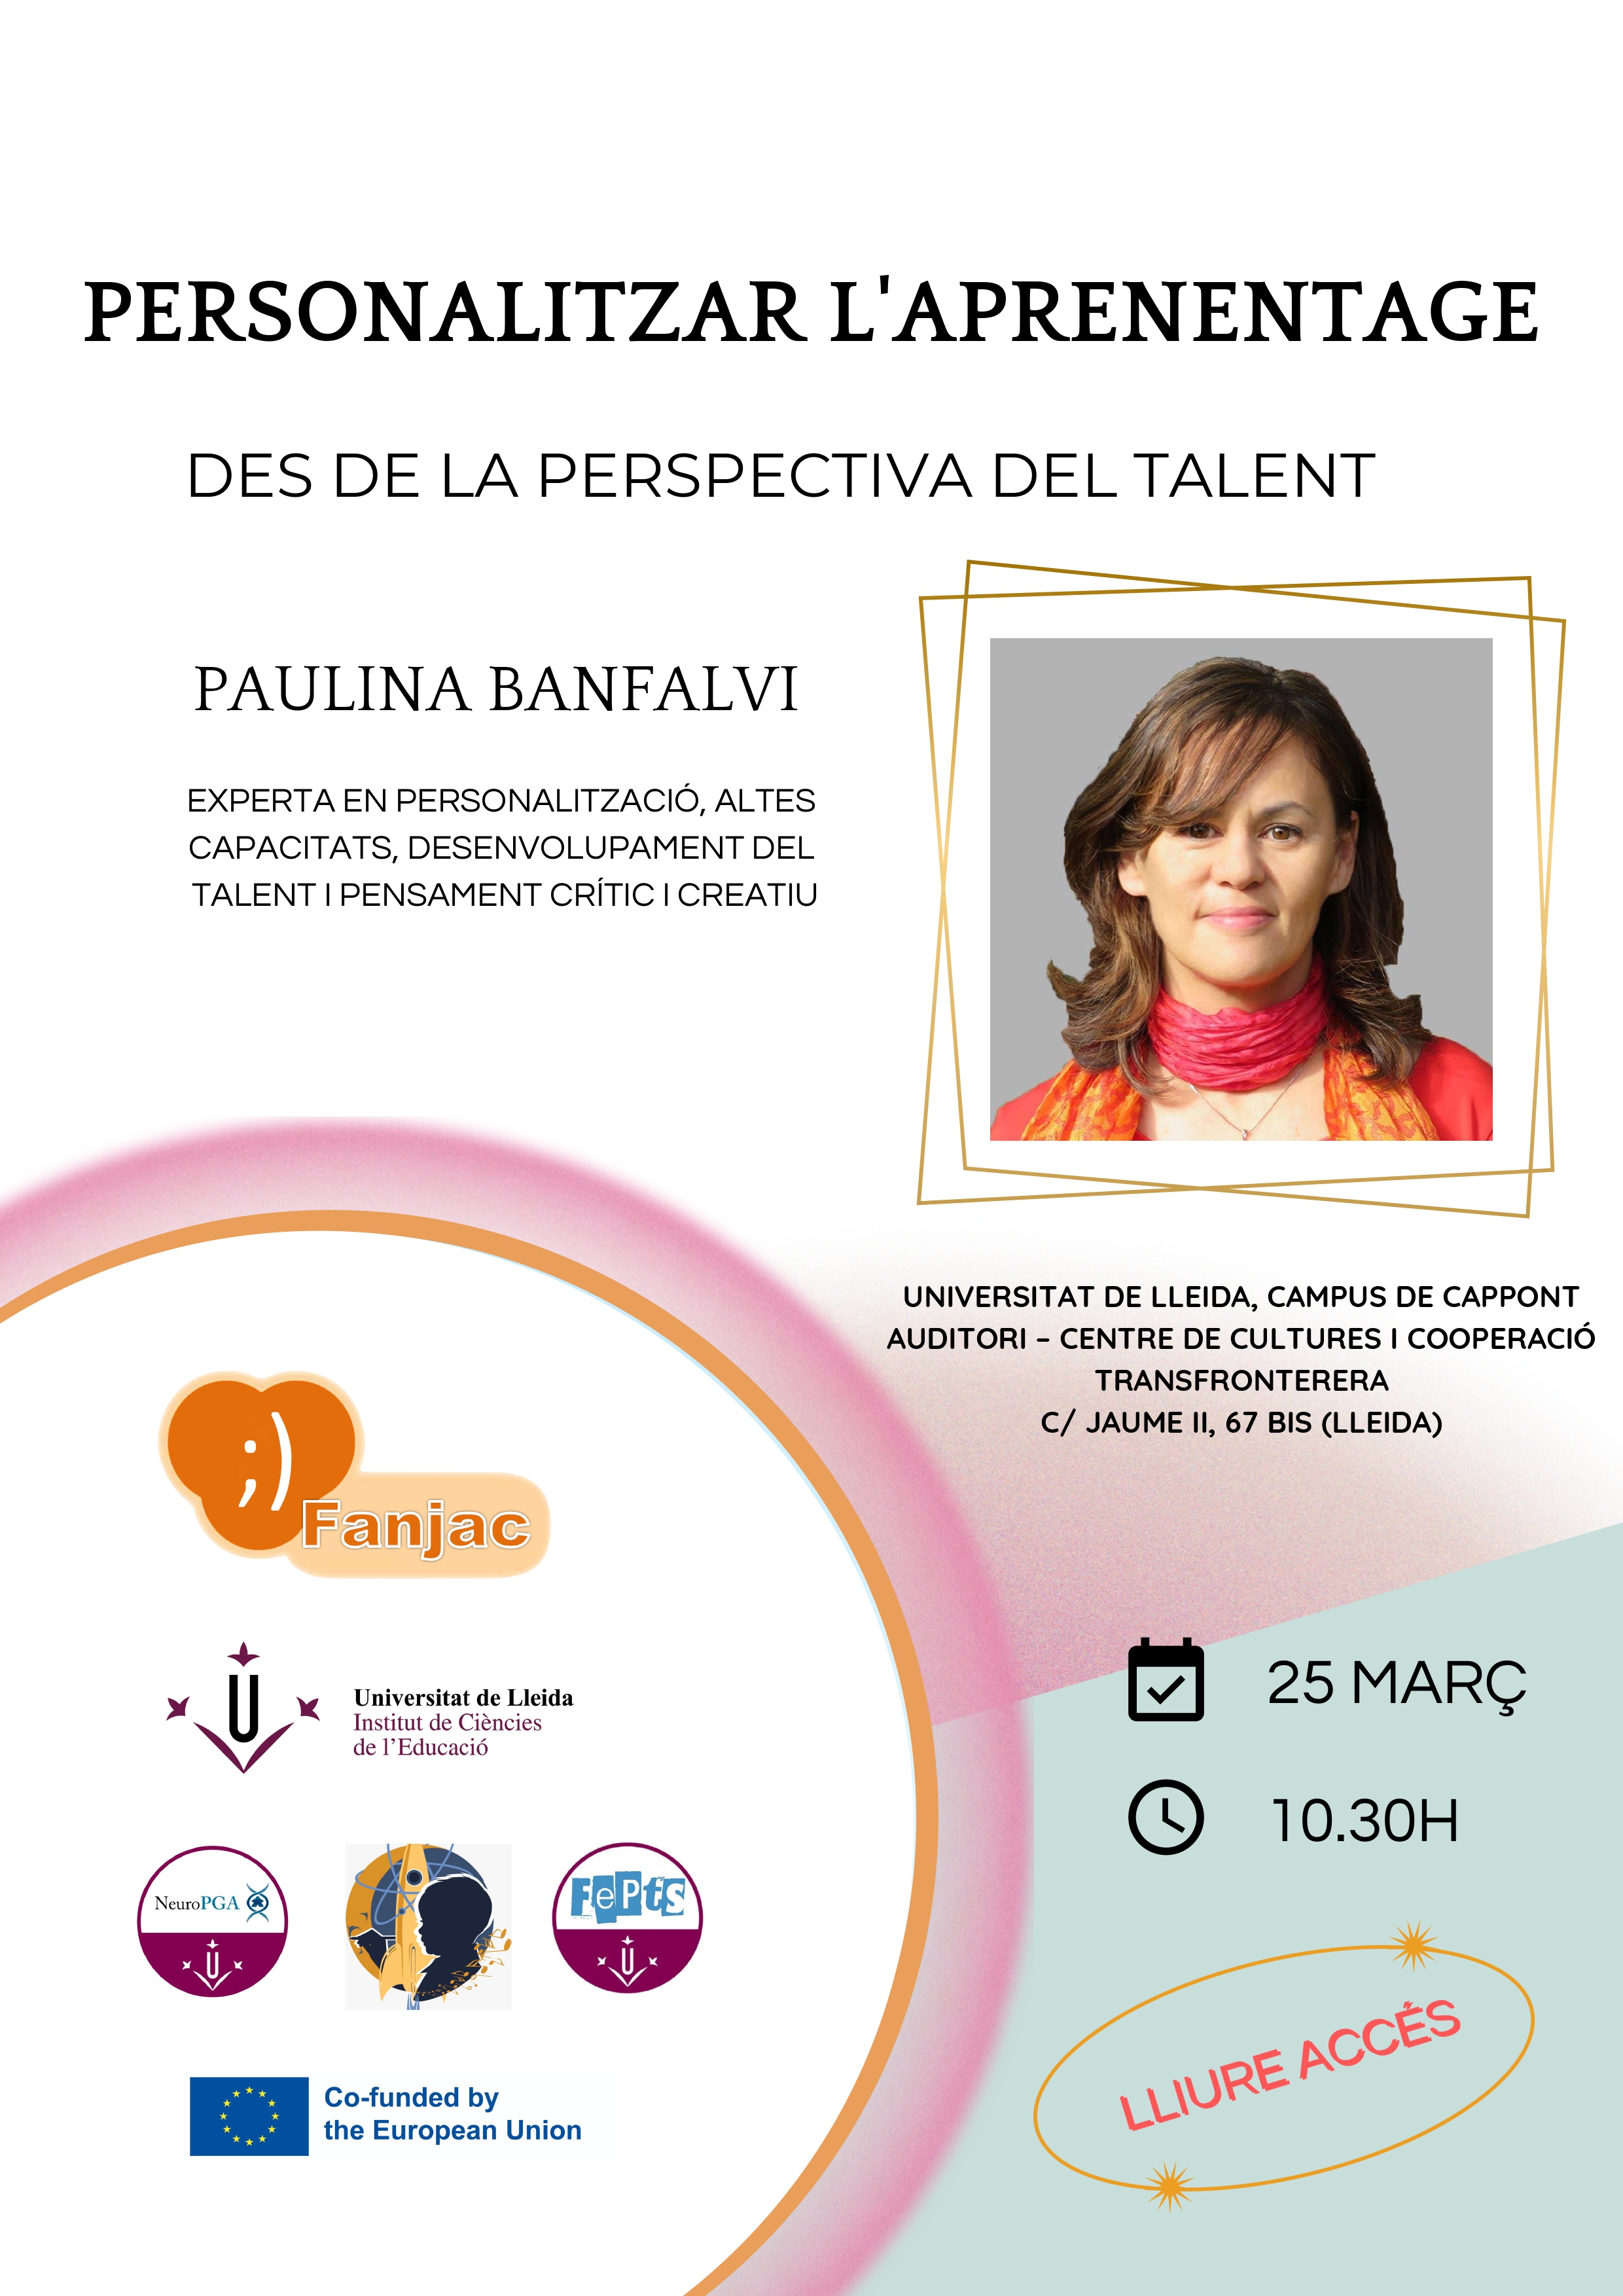 Conferència: Personalitzar l'aprenentatge des de la perspectiva del talent, a càrrec de Paulina Banfalvi